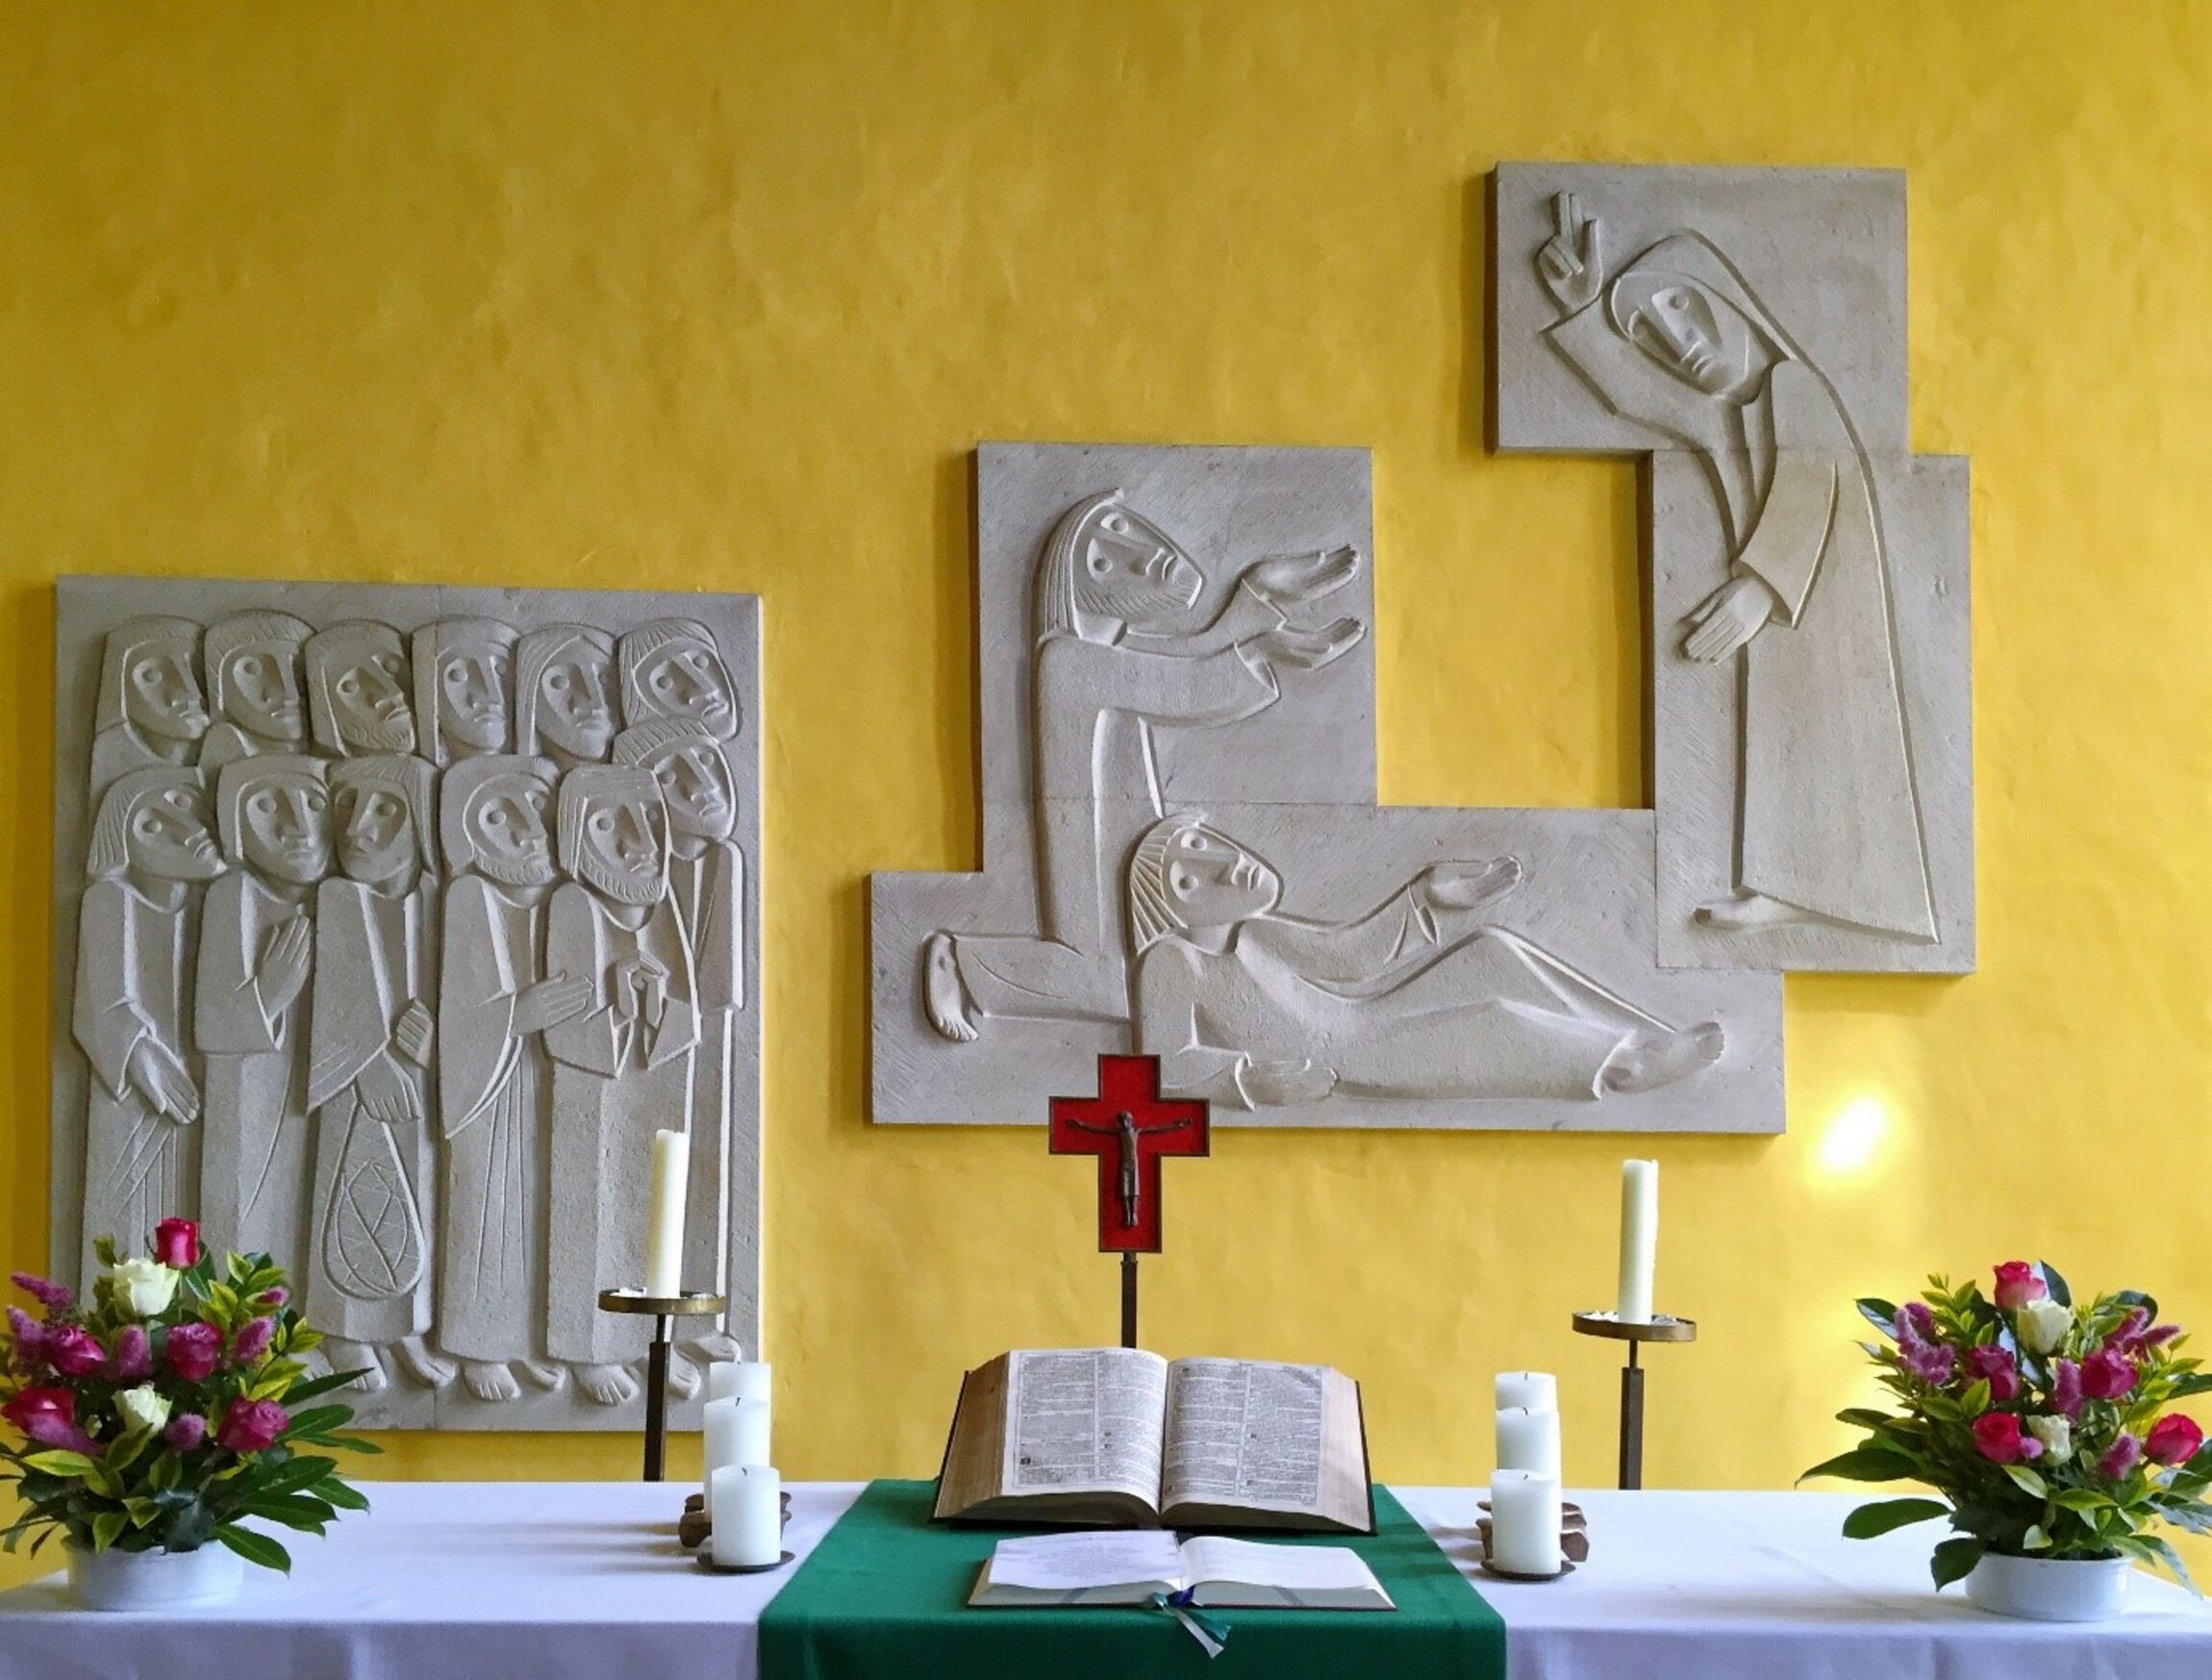 Altar der Markuskirche Stade - Sandsteinrelief des Bildhauers Kurt Lettow - Foto: C. Berndt 